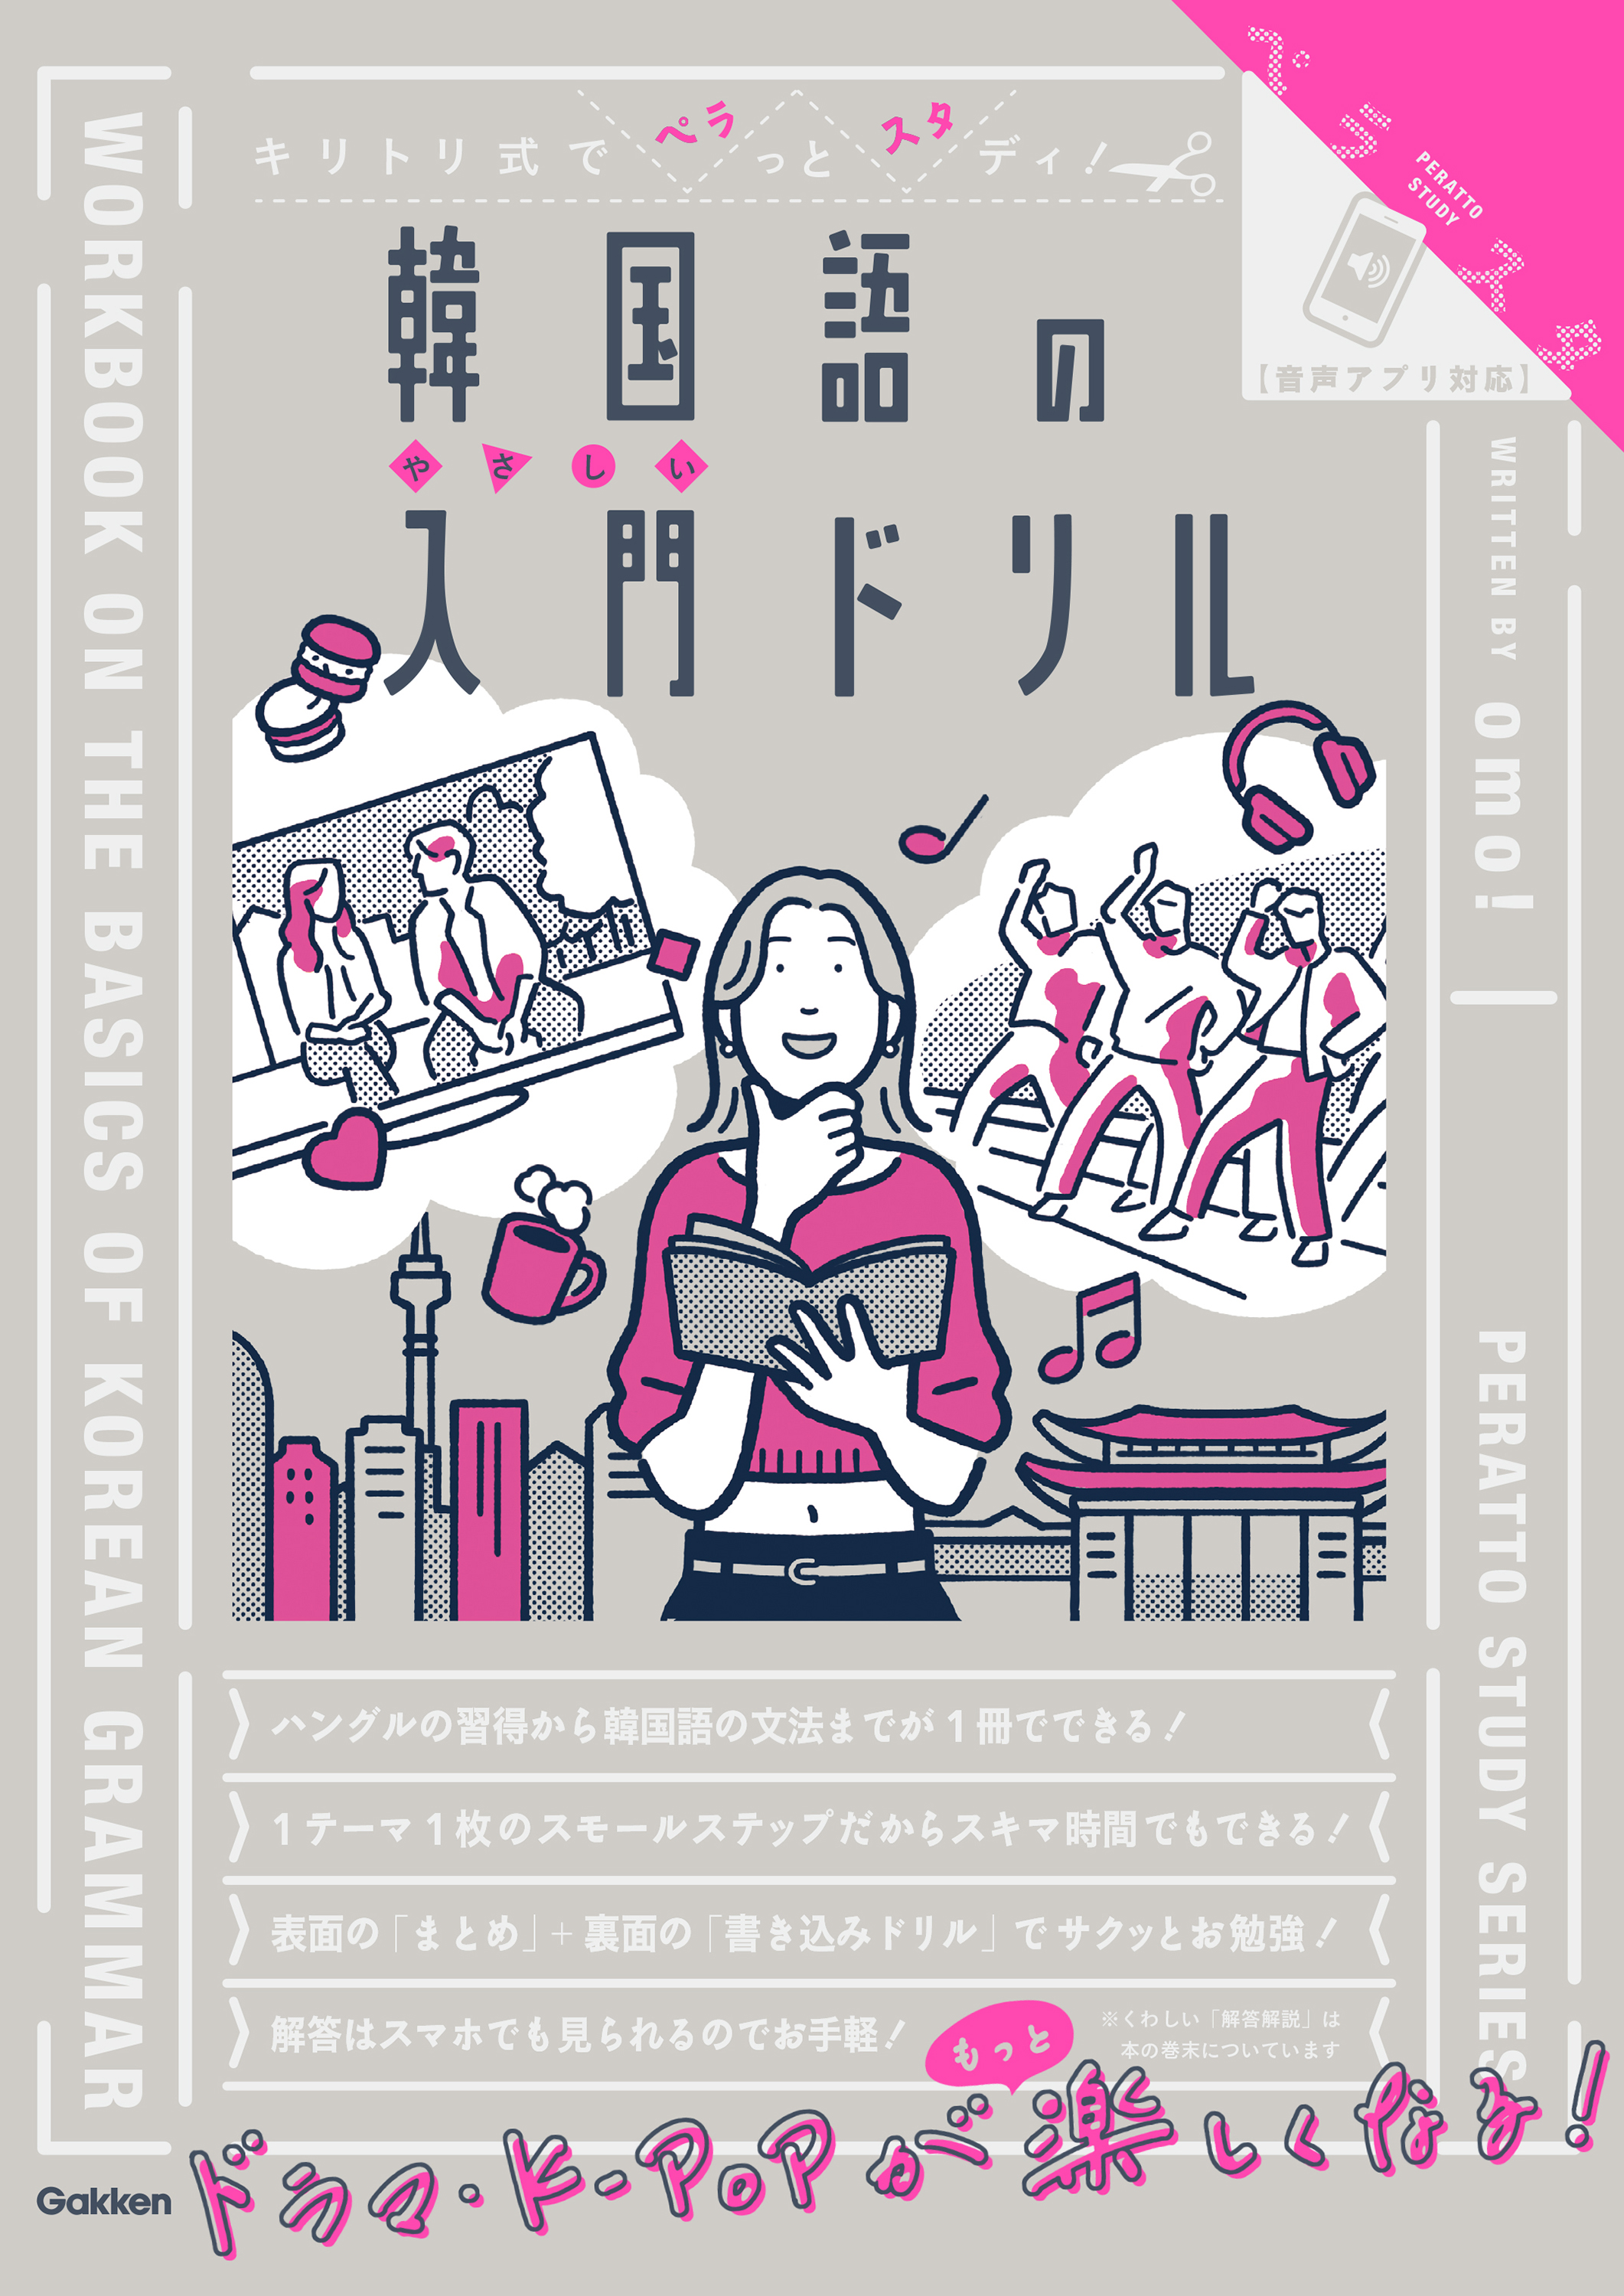 キリトリ式の大人向けドリル「ペラスタ」シリーズに韓国語が新登場! おしゃれなドリルで、ハングルと韓国語文法が身につく。 | 学研プラス公式ブログ